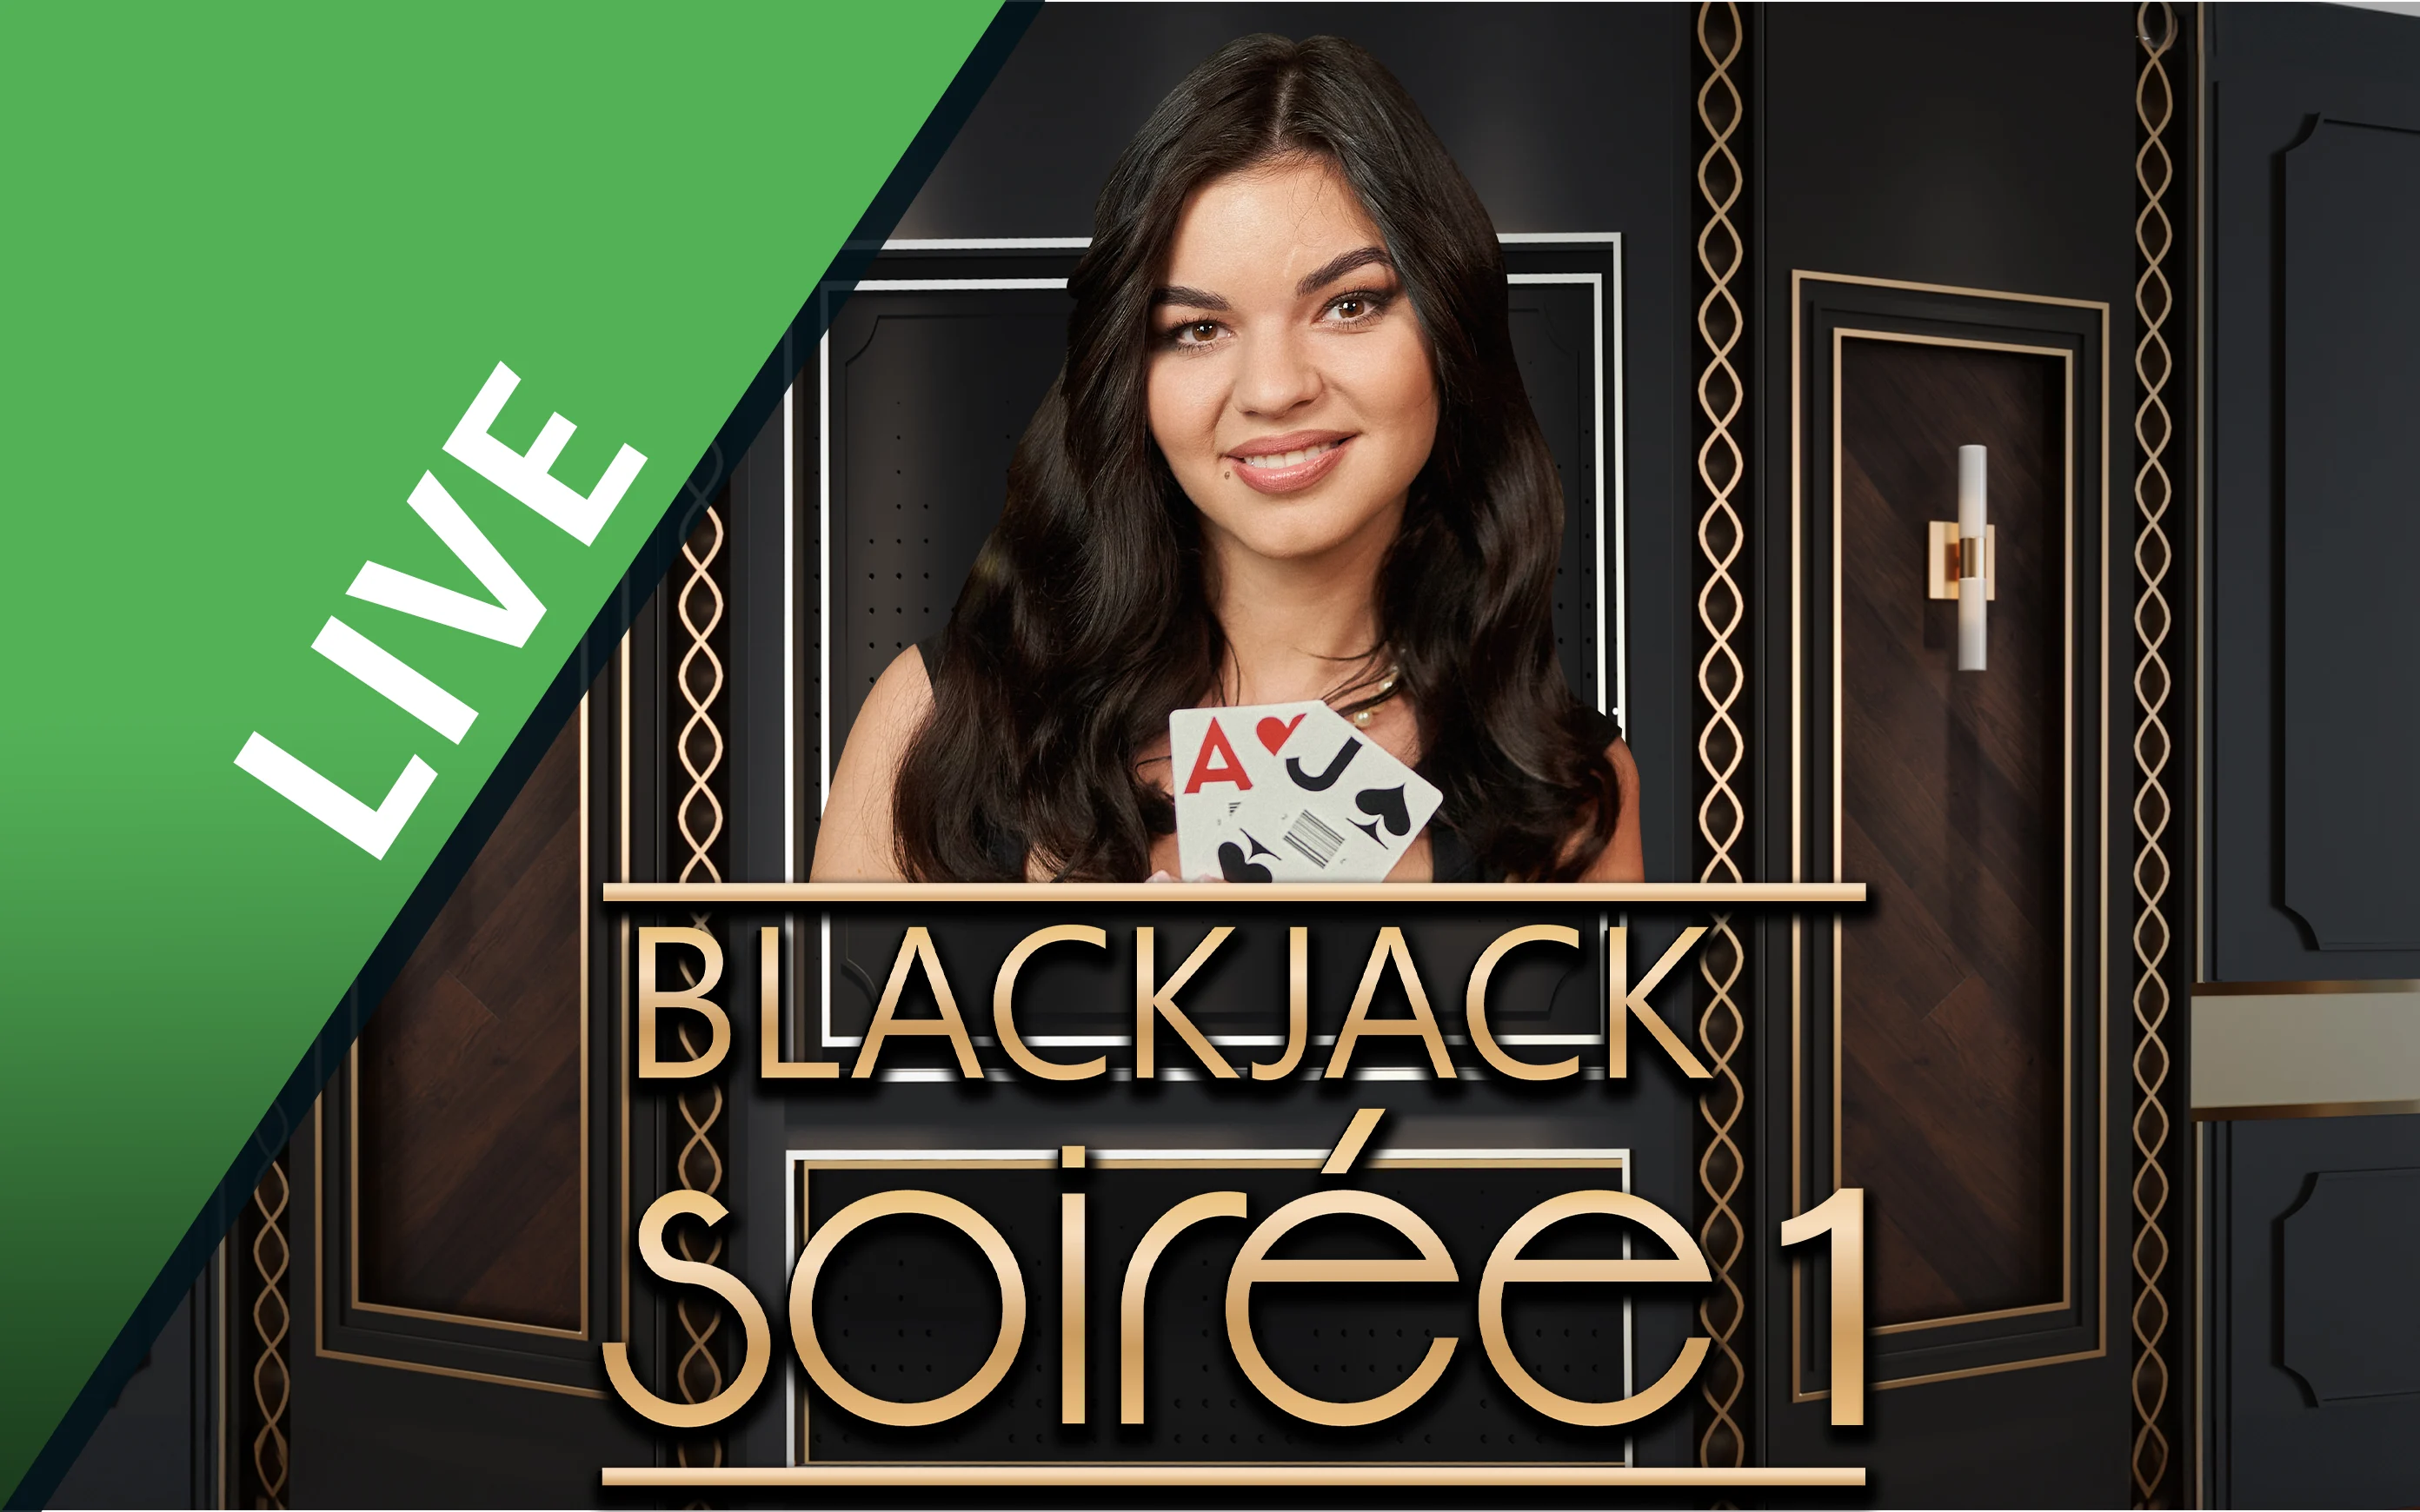 Jouer à Blackjack Soirée 1 sur le casino en ligne Starcasino.be